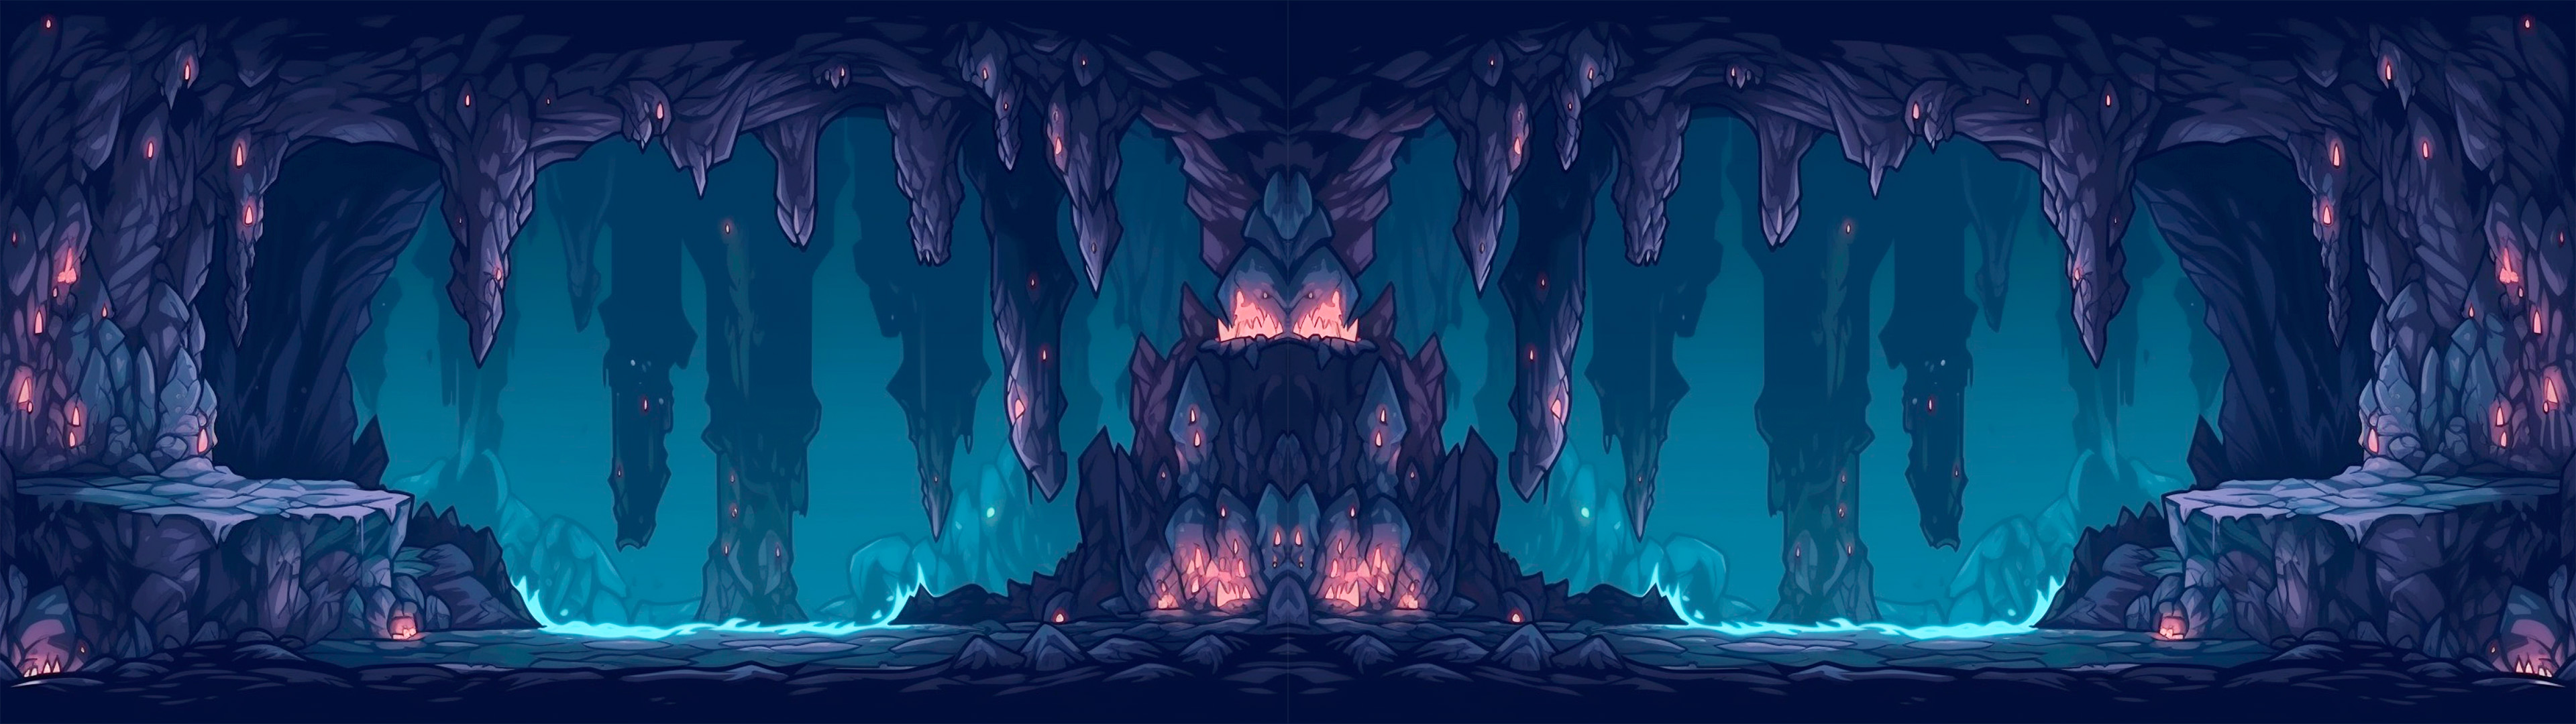 Evil Caverns Tiled Background